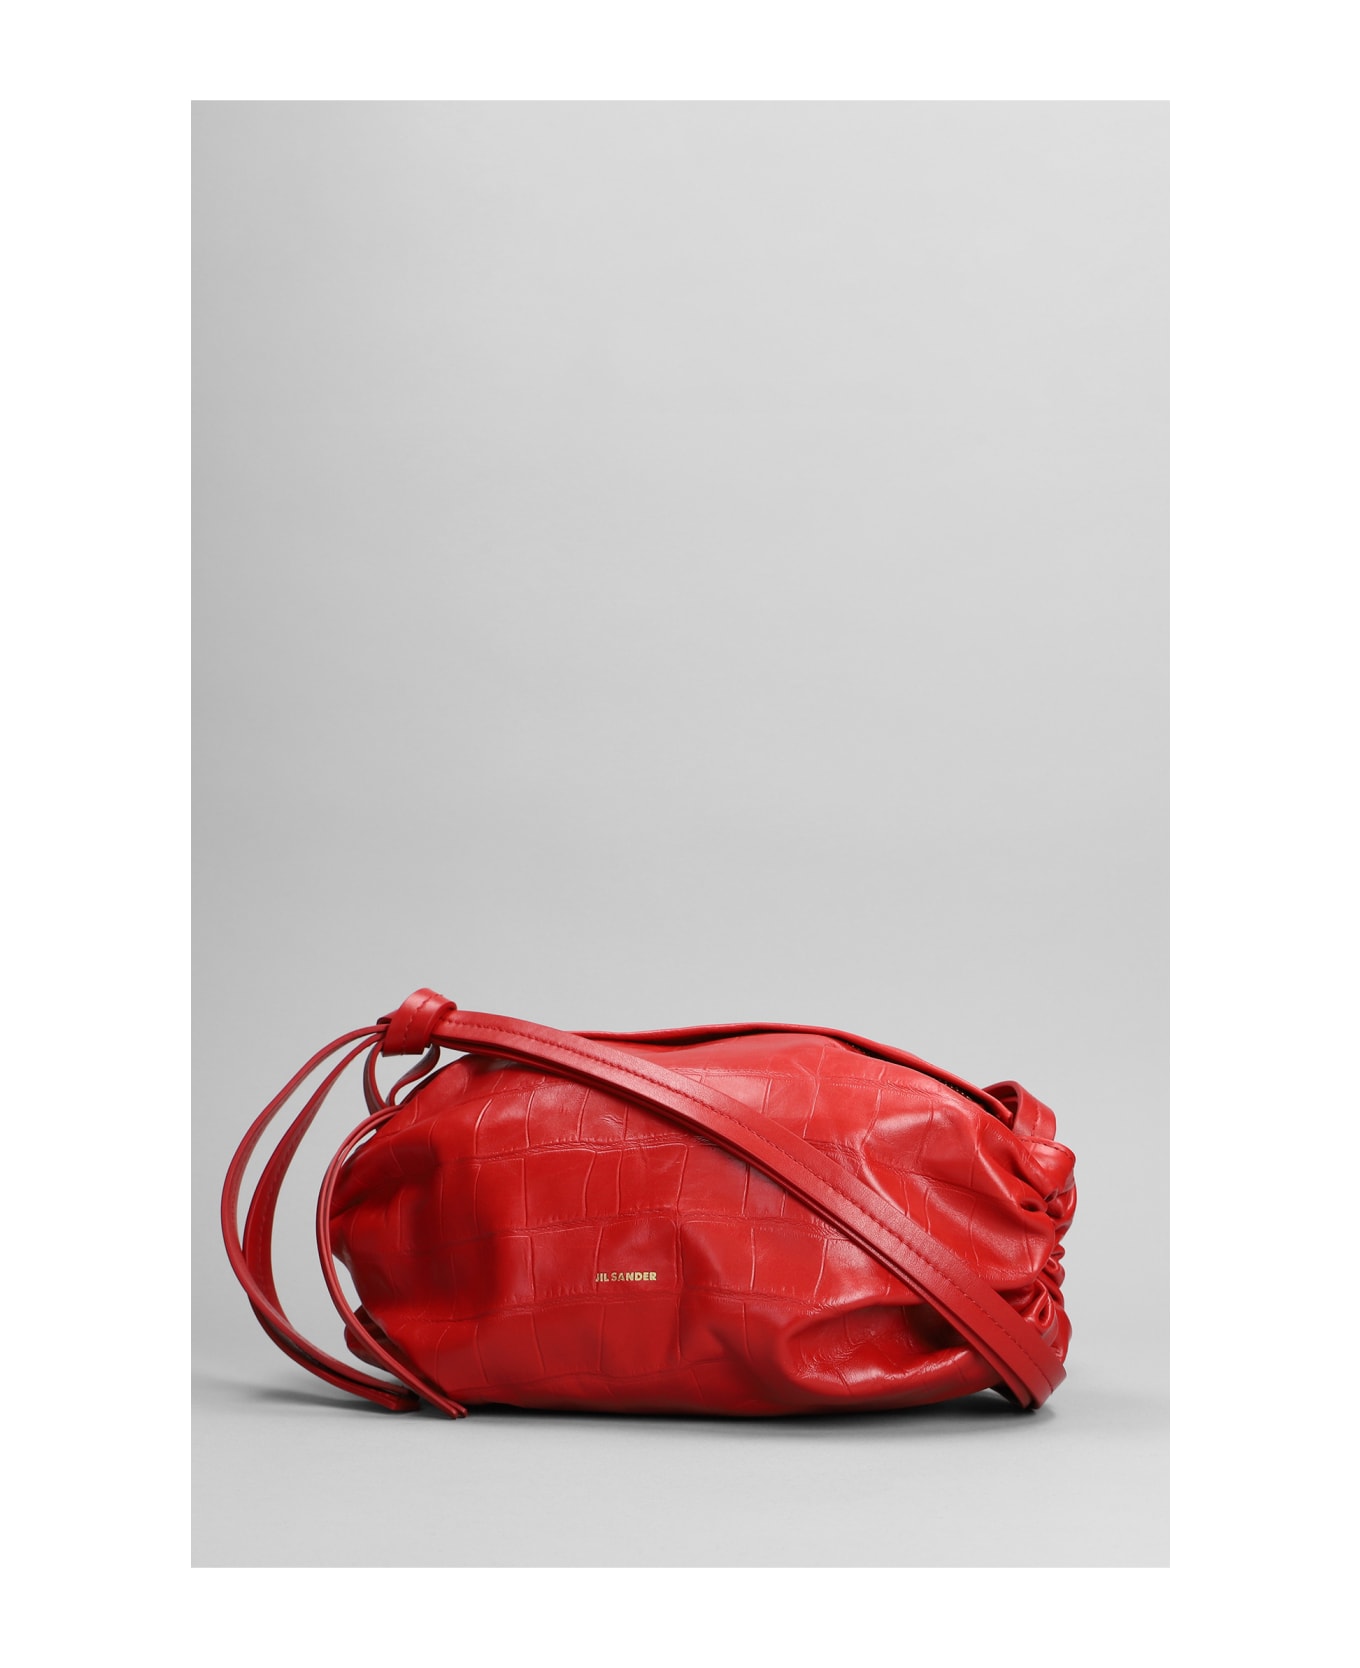 Jil Sander Shoulder Bag In Red Leather - red